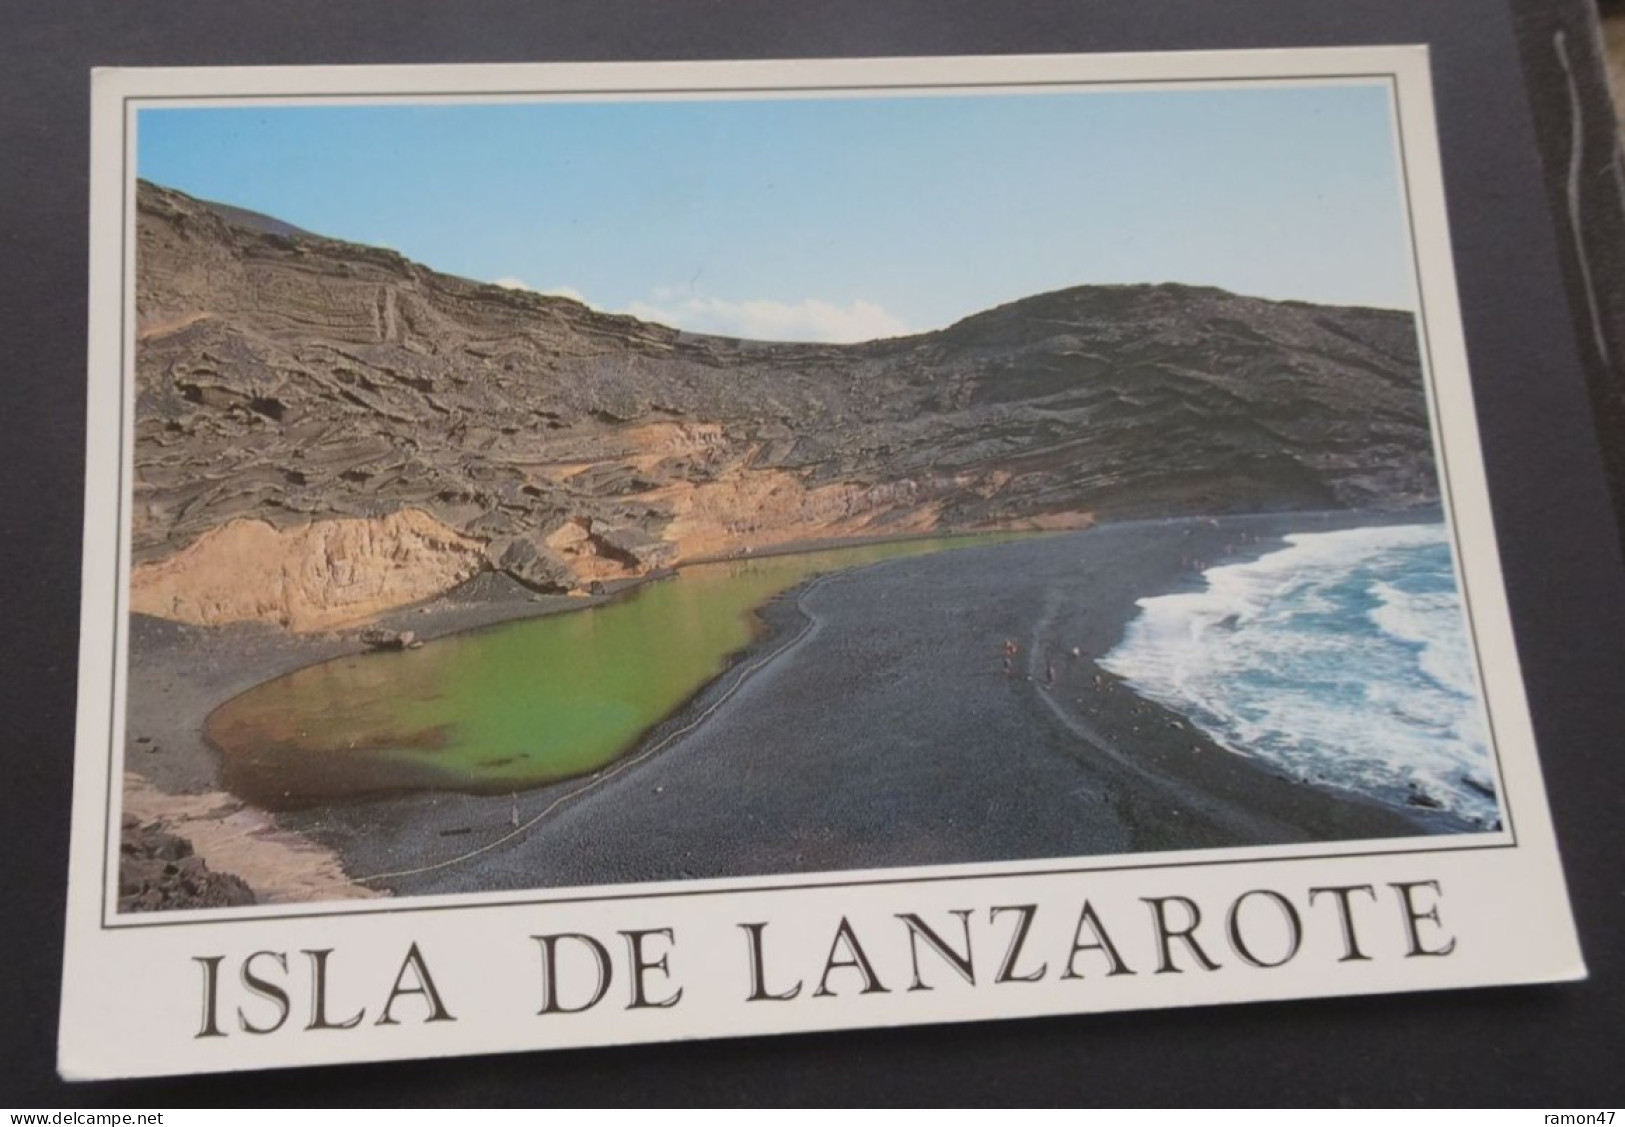 Isla De Lanzarote - El Golfo - Brito & Manzano, Souvenirs - # 131 L - Lanzarote